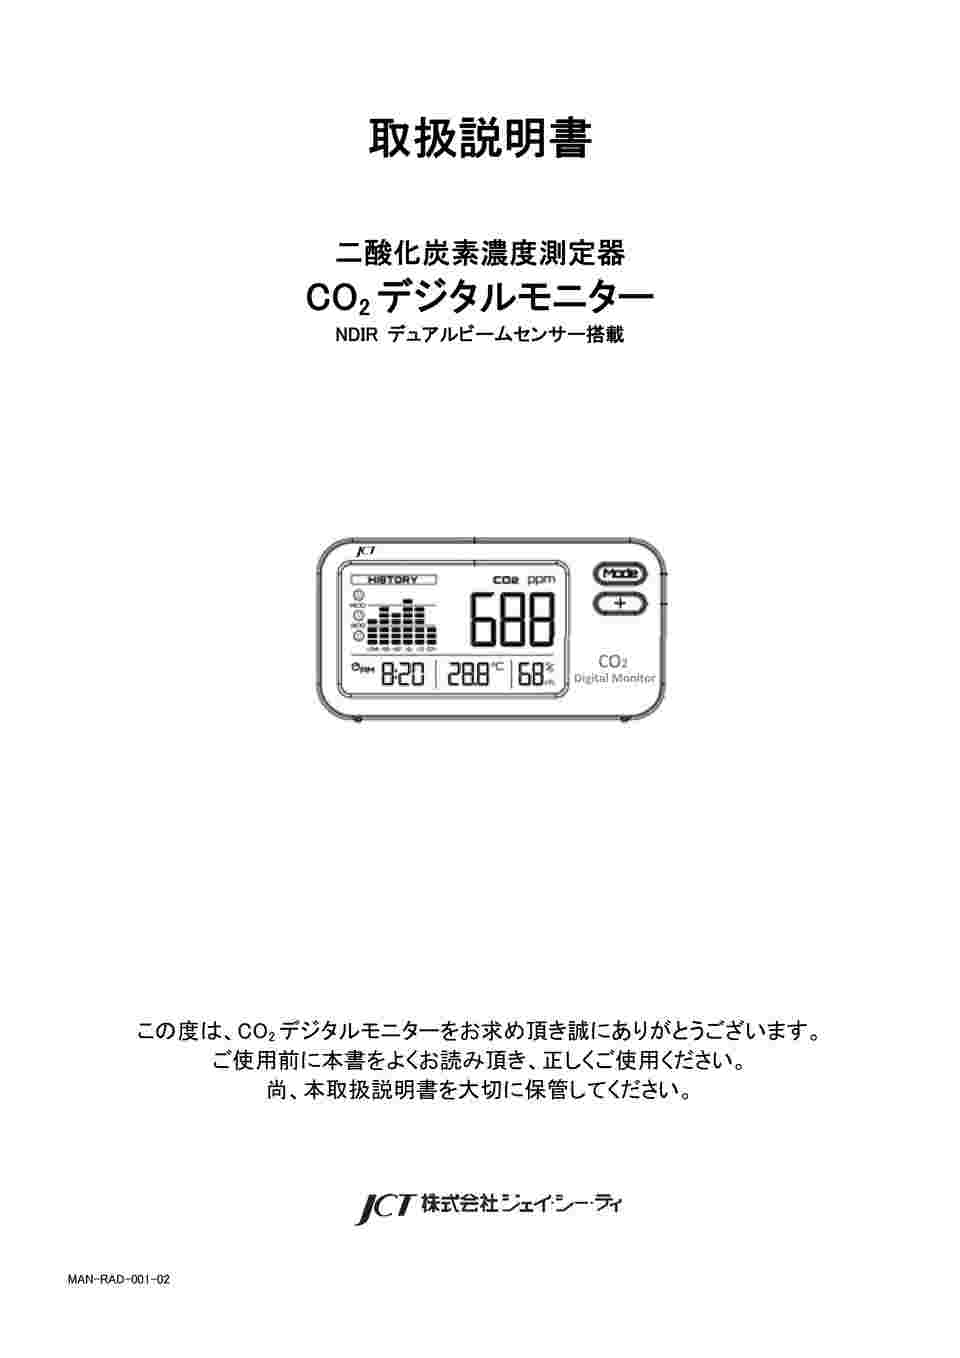 65-0831-55 二酸化炭素濃度測定器 CO2デジタルモニター ZGm27 【AXEL